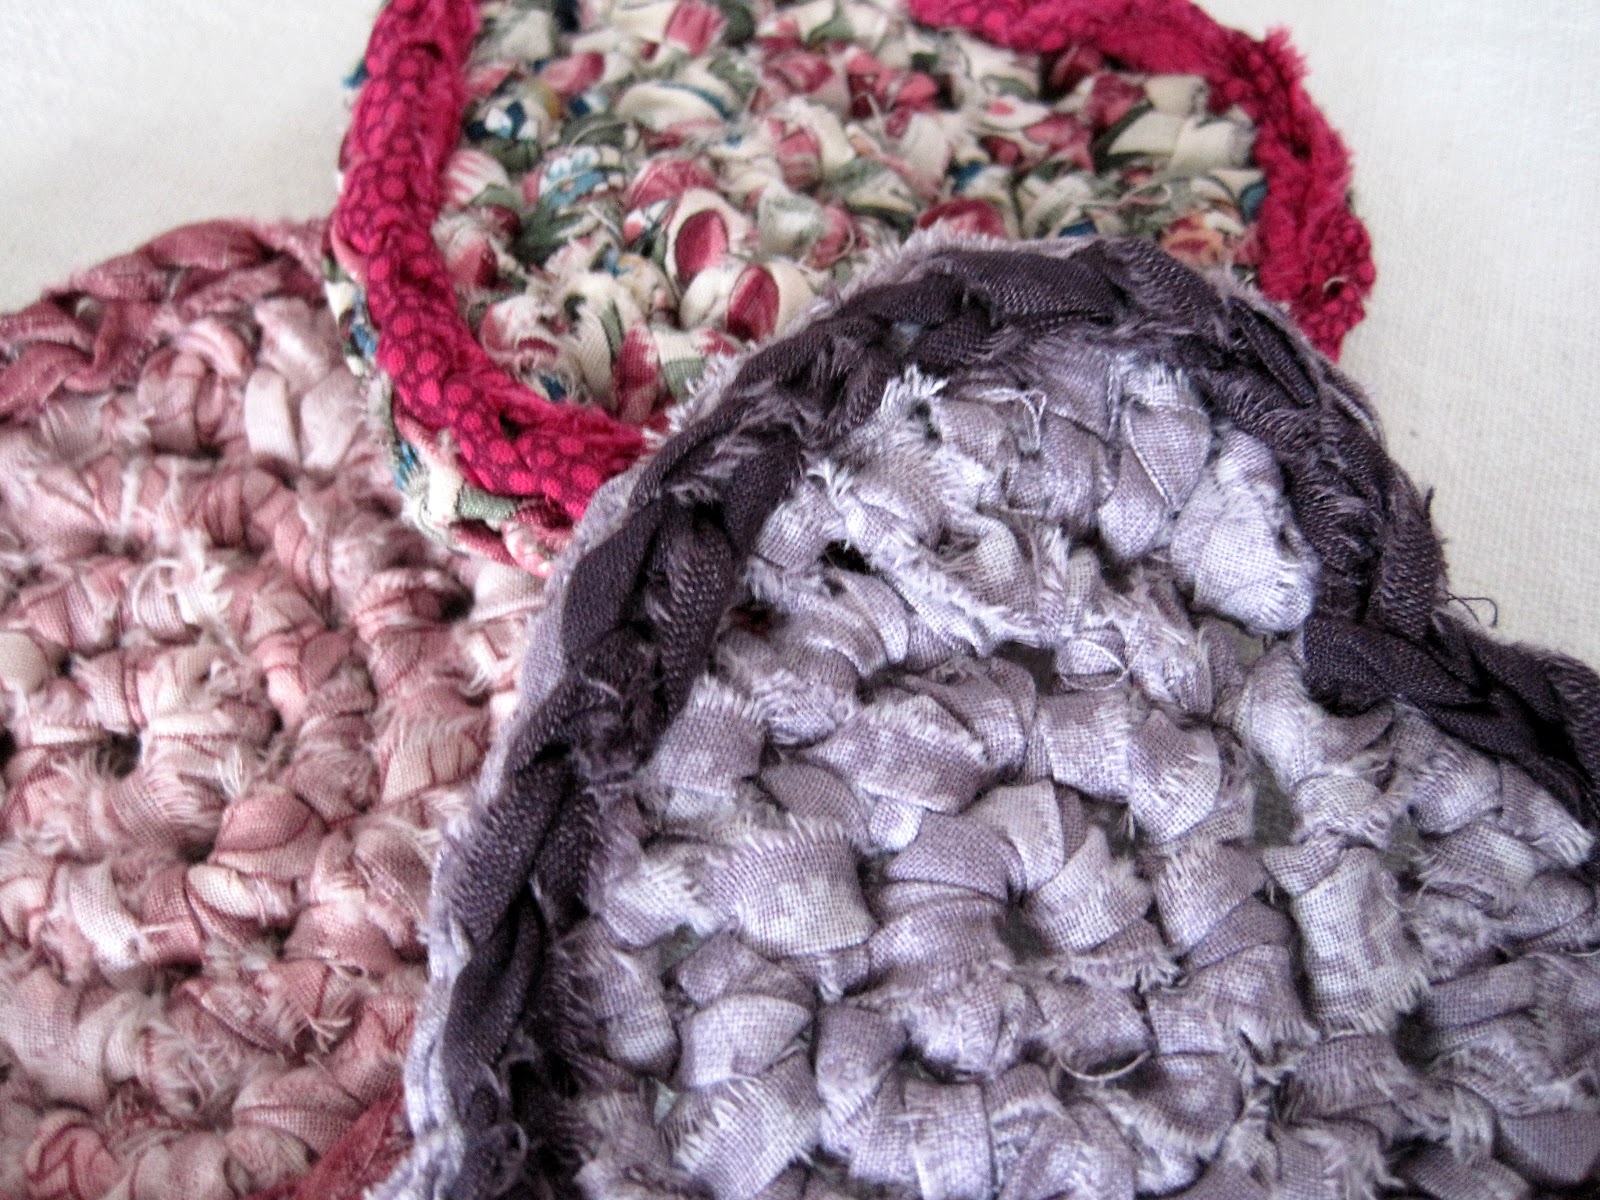 Free Heart Coaster Crochet Pattern - Hooked On Patterns